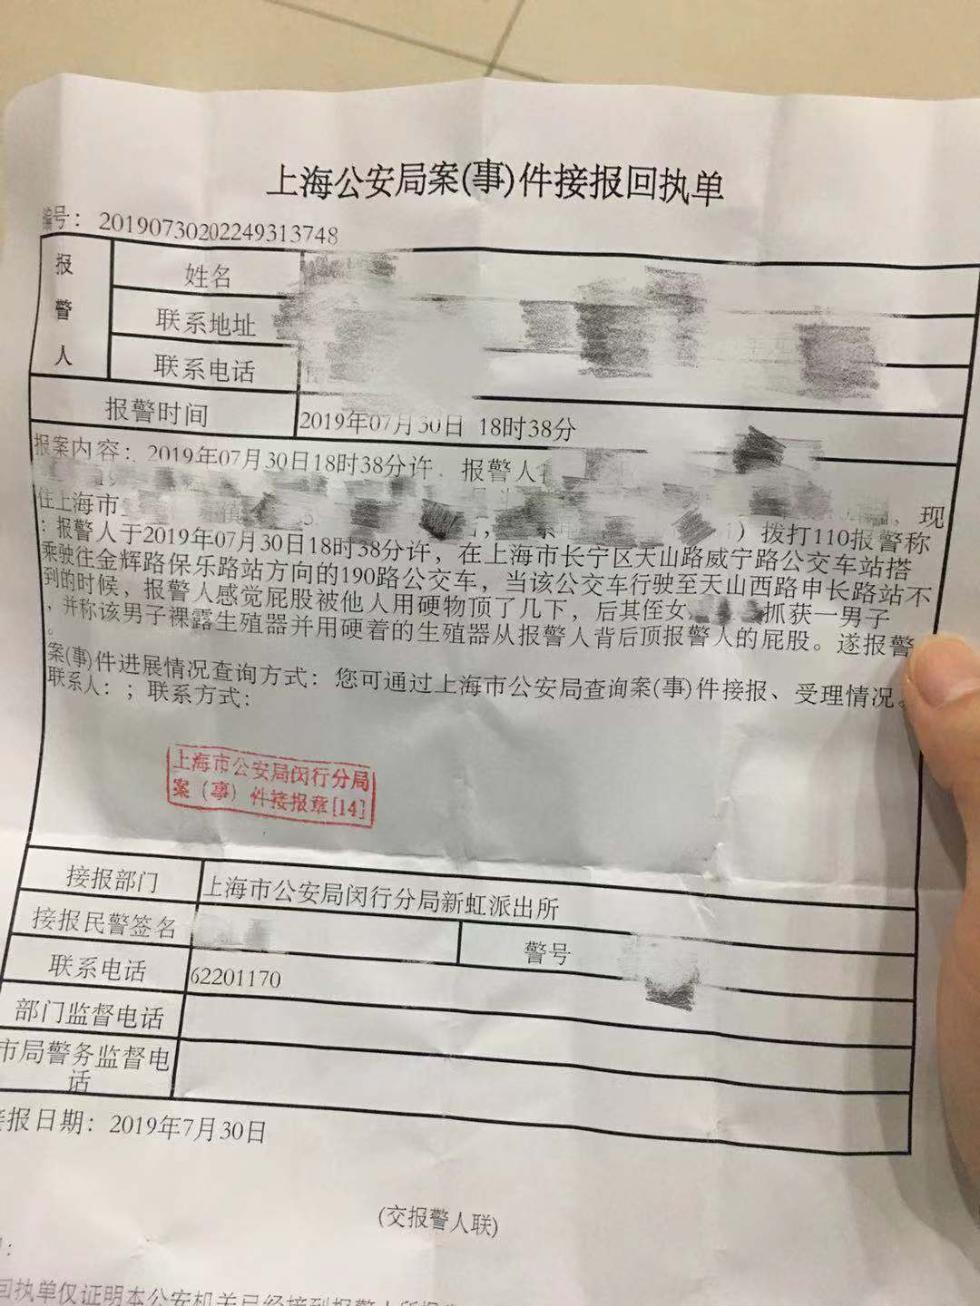 上海公安局案(事)件接报回执单